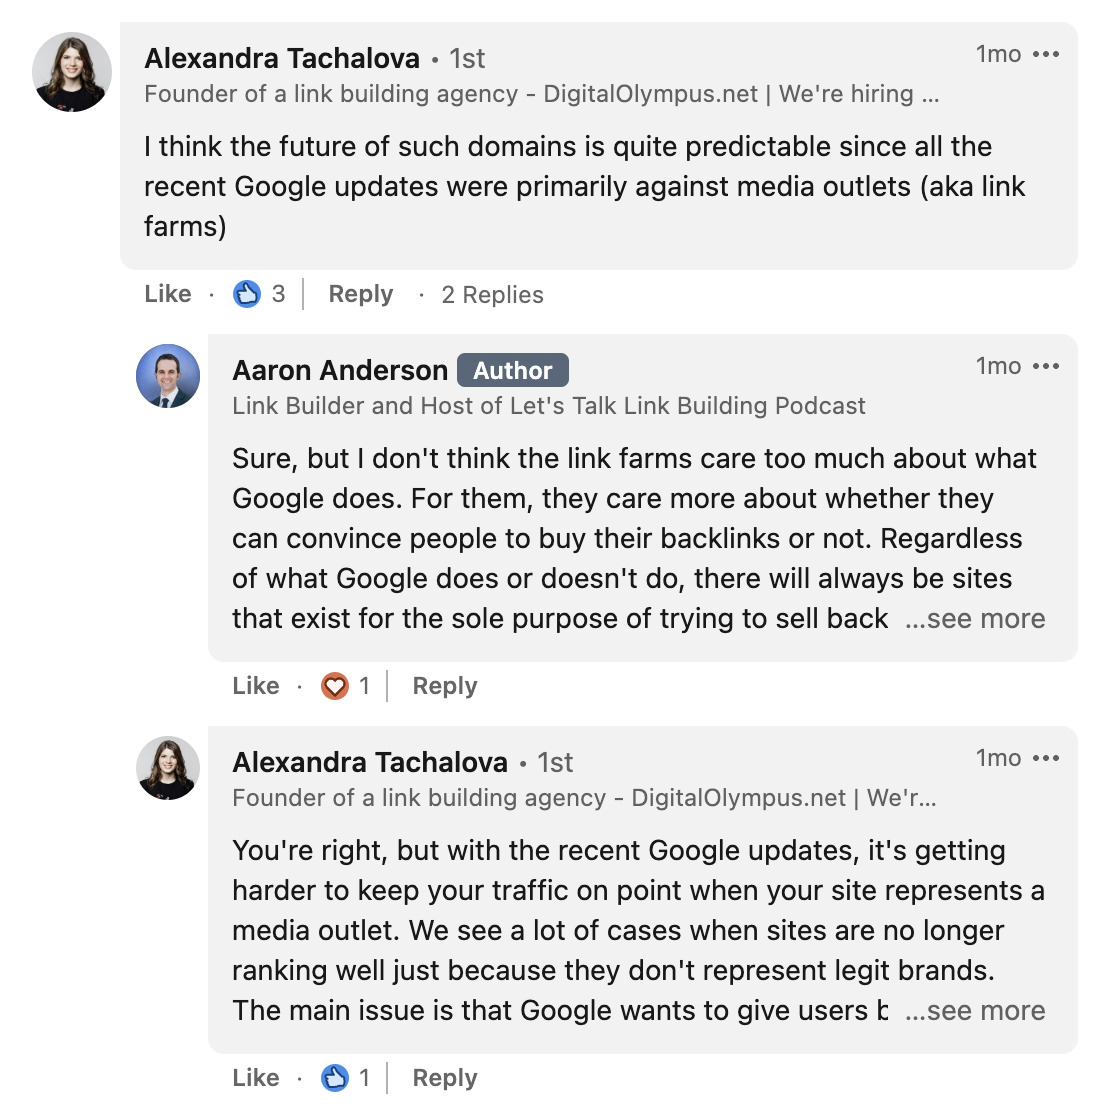 LinkedIn yorumlarında Alexandra Tachalova ve Aaron Anderson arasındaki etkileşim